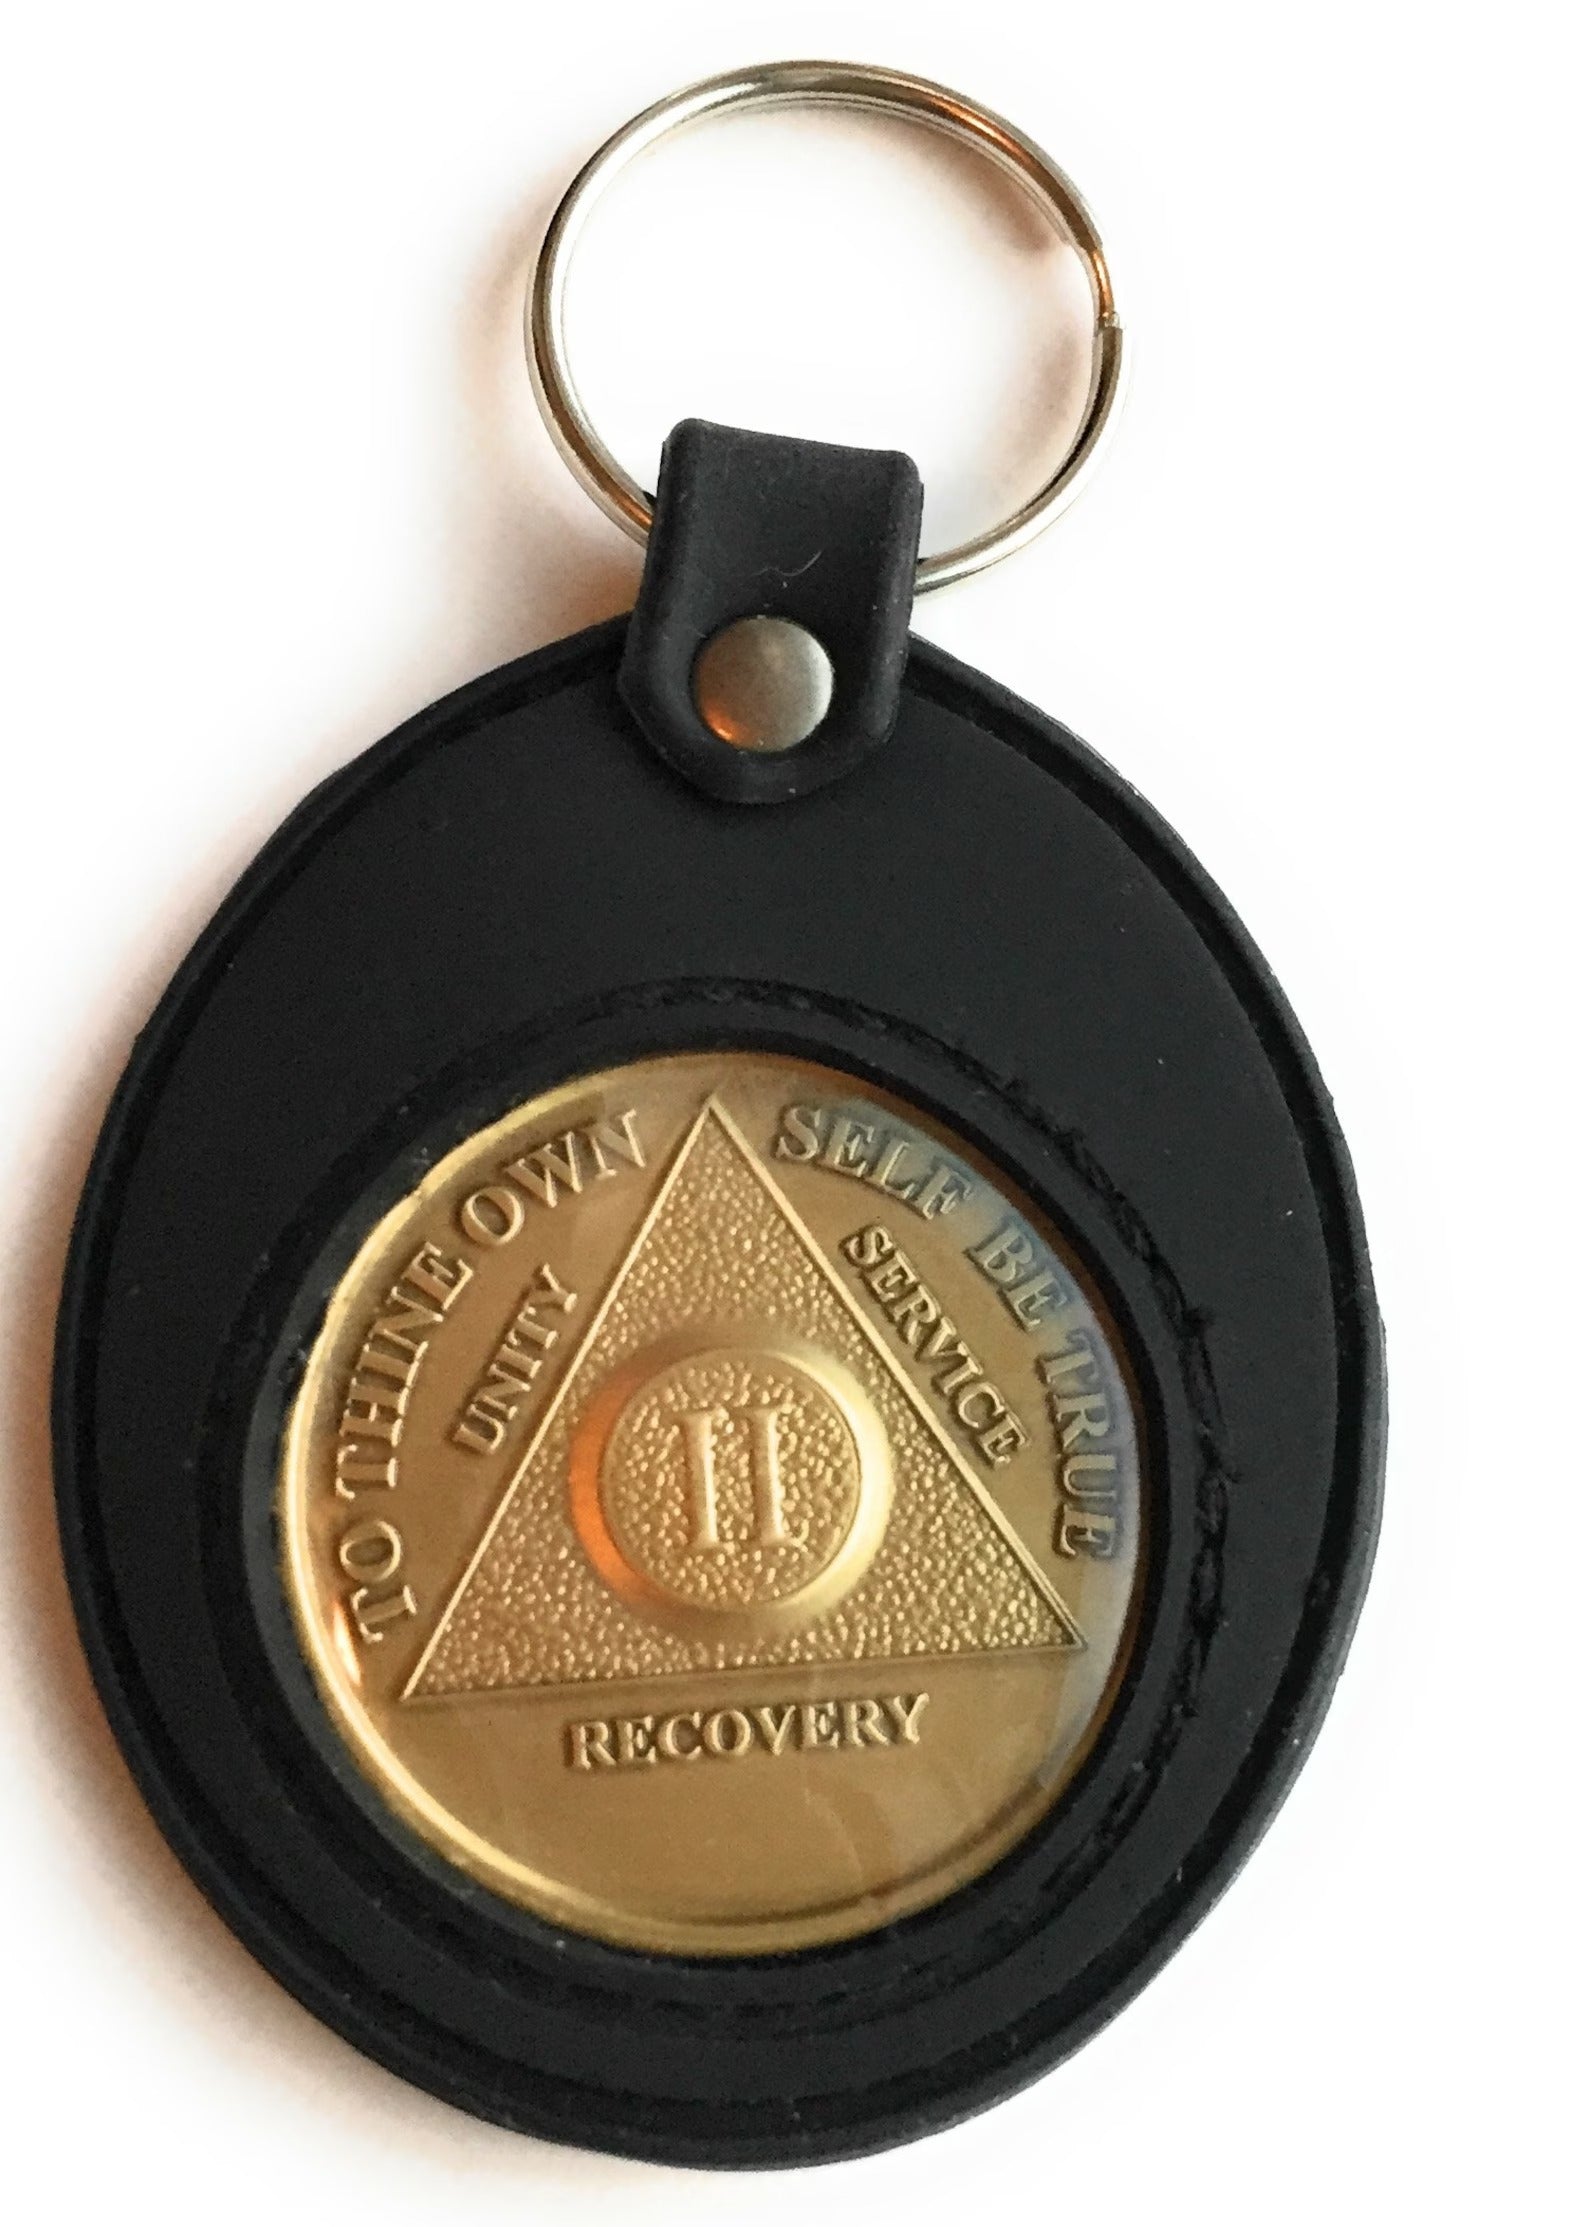 AA Medallion Holders, AA Coin Holders